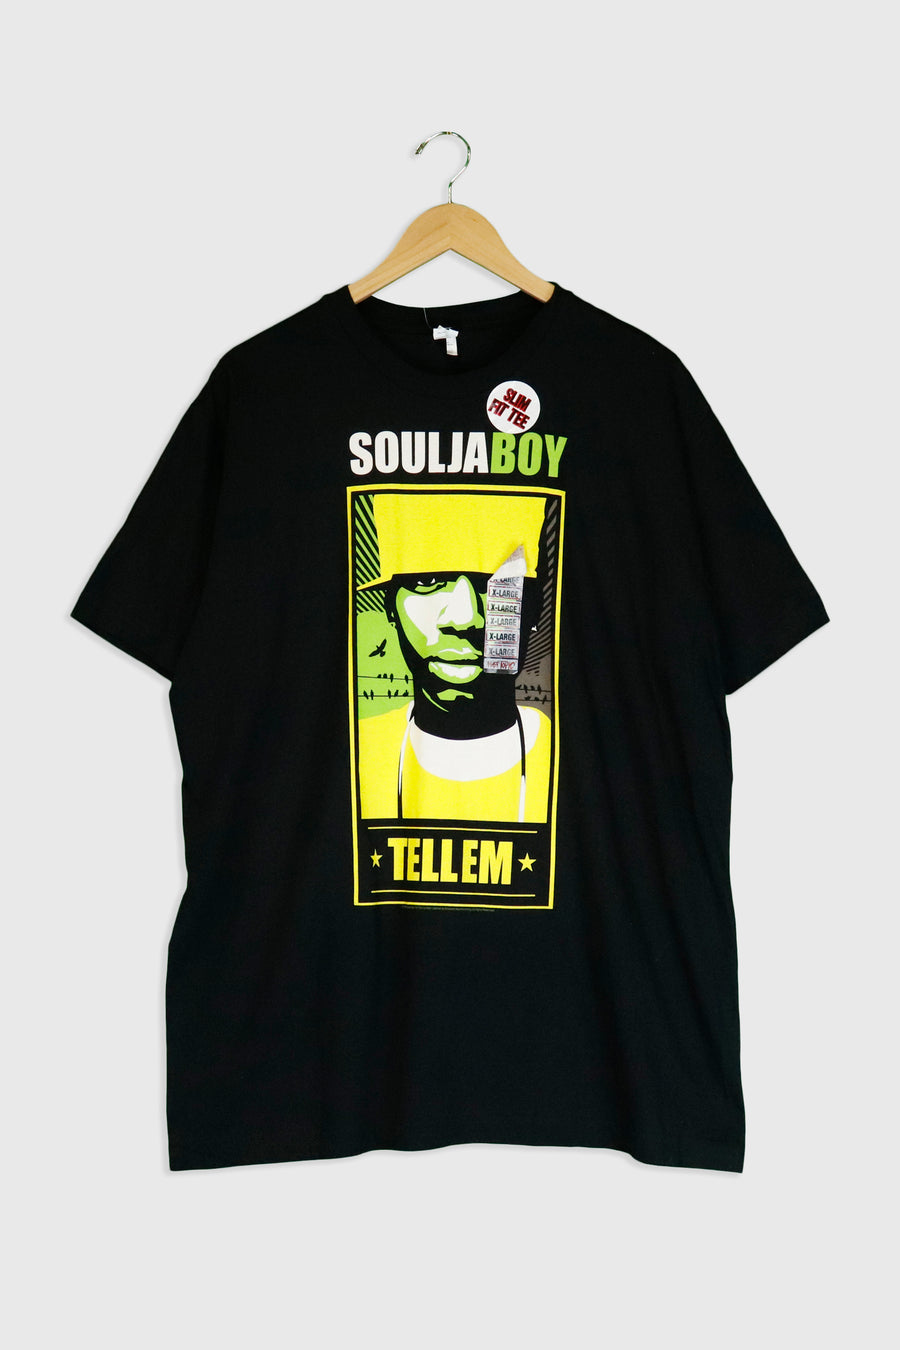 Soulja Boy Tellem 2009 T Shirt Sz XL